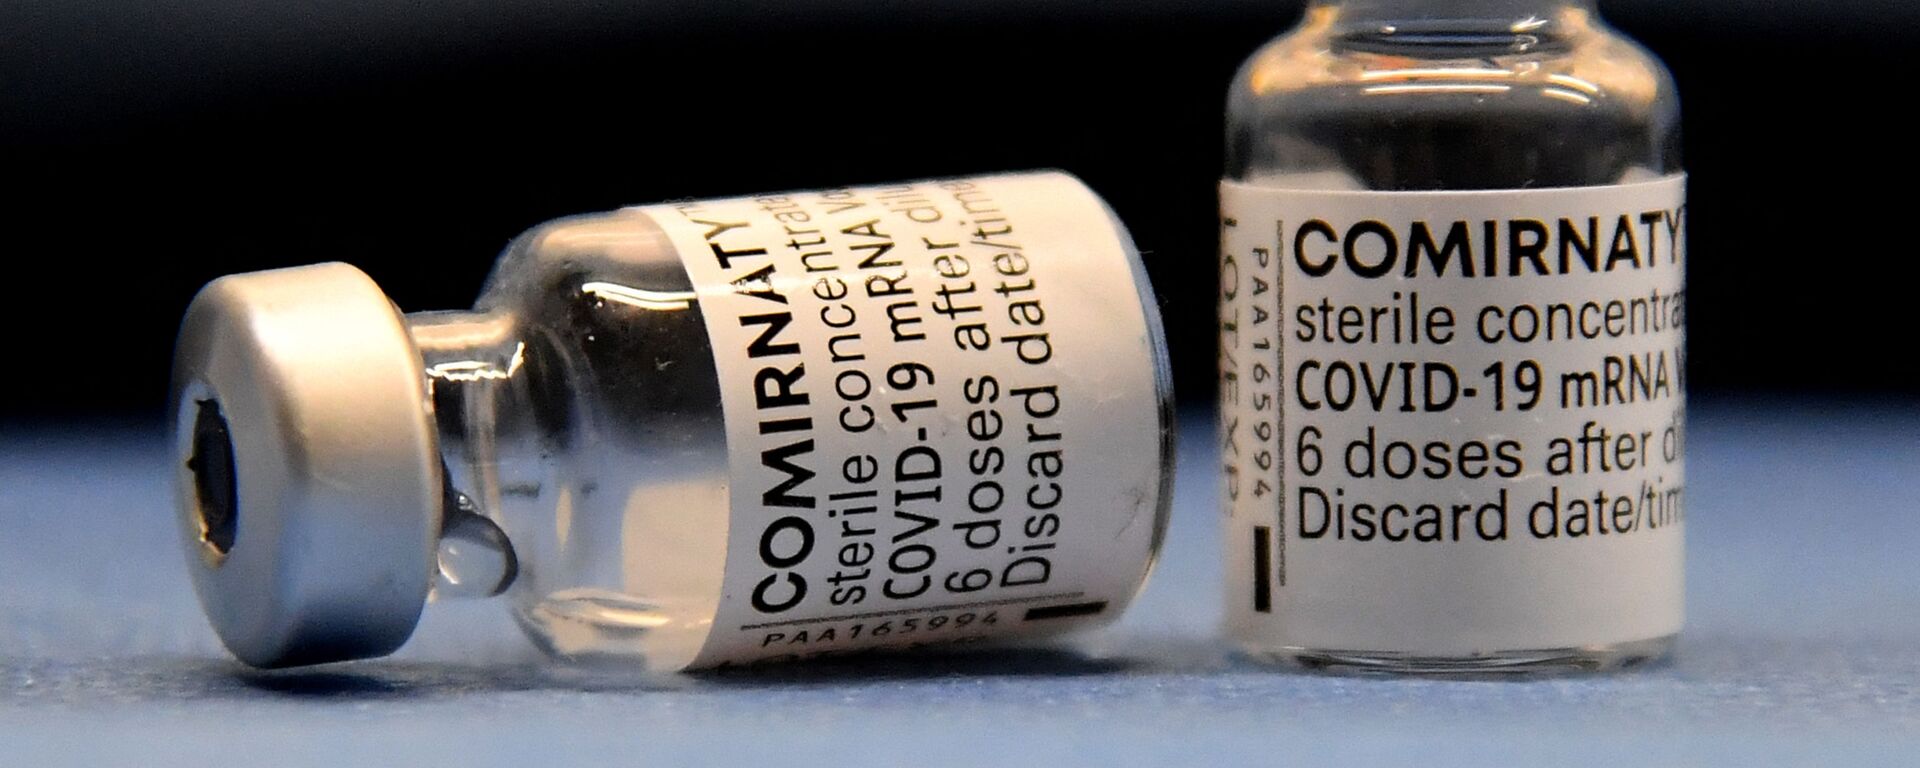 Ампулы с вакциной от коронавируса Pfizer/BioNTech - Sputnik Lietuva, 1920, 14.06.2021